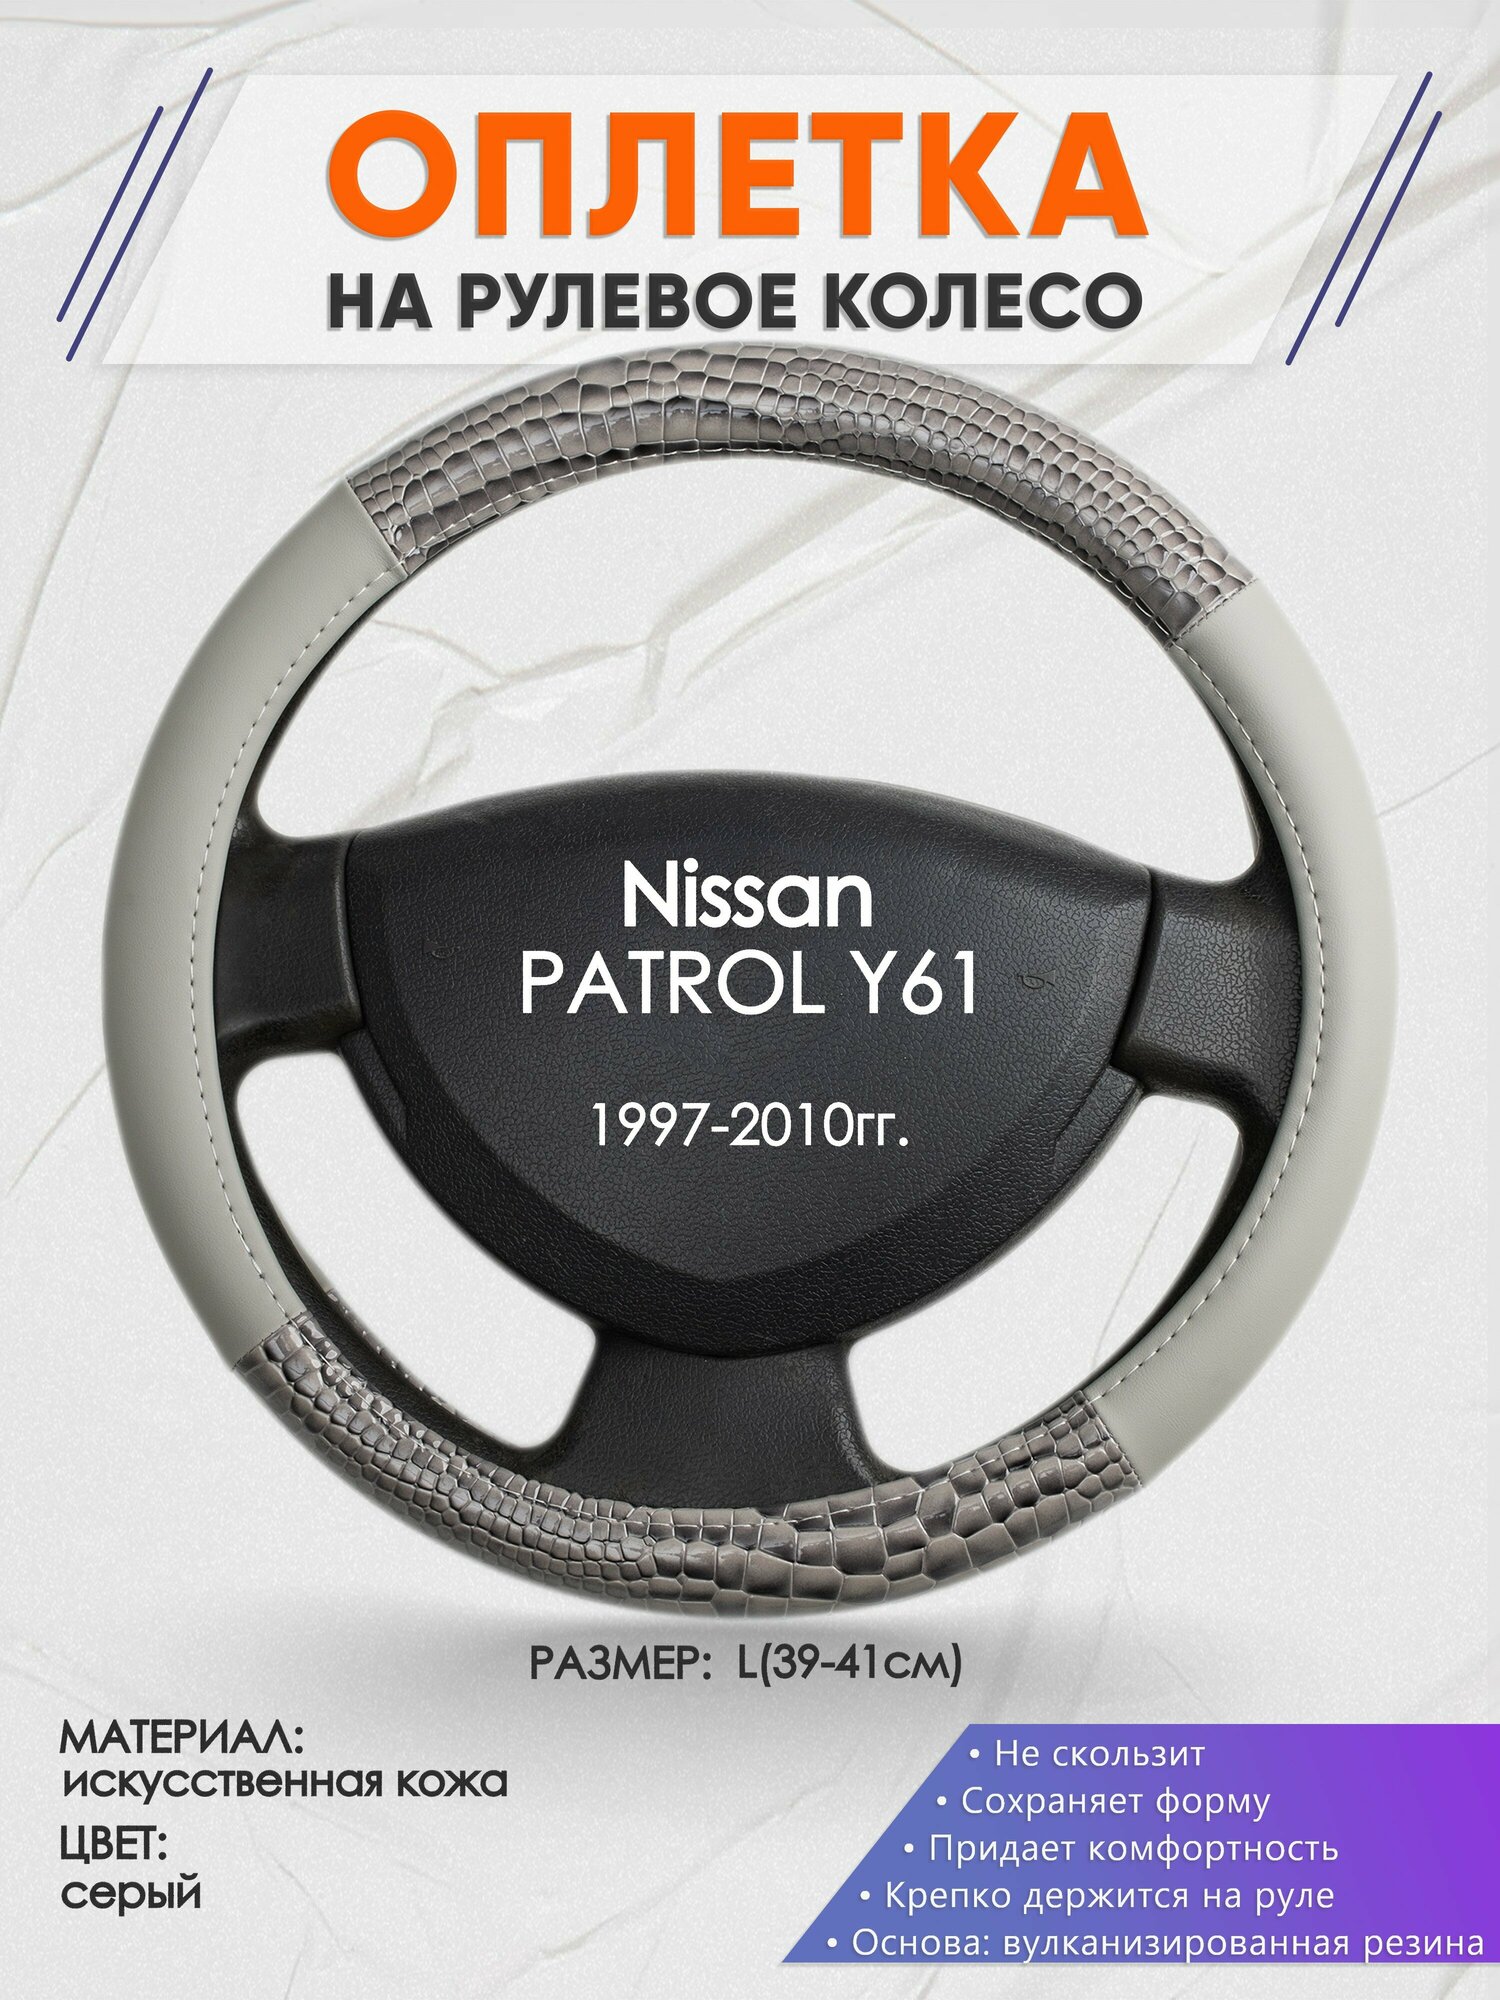 Оплетка на руль для Nissan PATROL Y61(Ниссан Патрол) 1997-2010, L(39-41см), Искусственная кожа 84